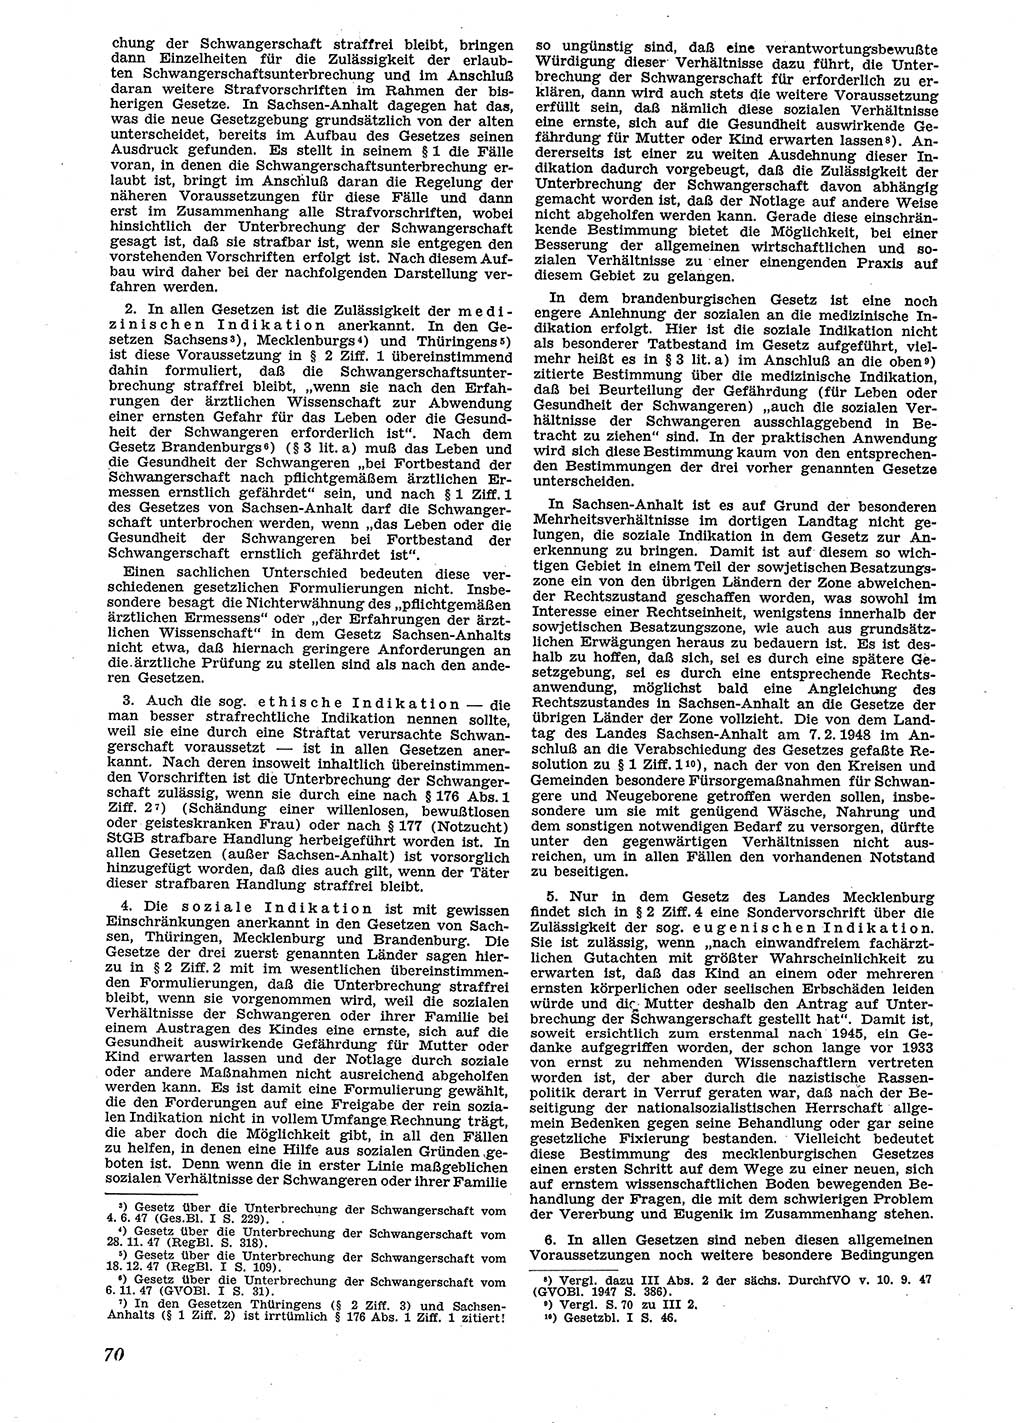 Neue Justiz (NJ), Zeitschrift für Recht und Rechtswissenschaft [Sowjetische Besatzungszone (SBZ) Deutschland], 2. Jahrgang 1948, Seite 70 (NJ SBZ Dtl. 1948, S. 70)